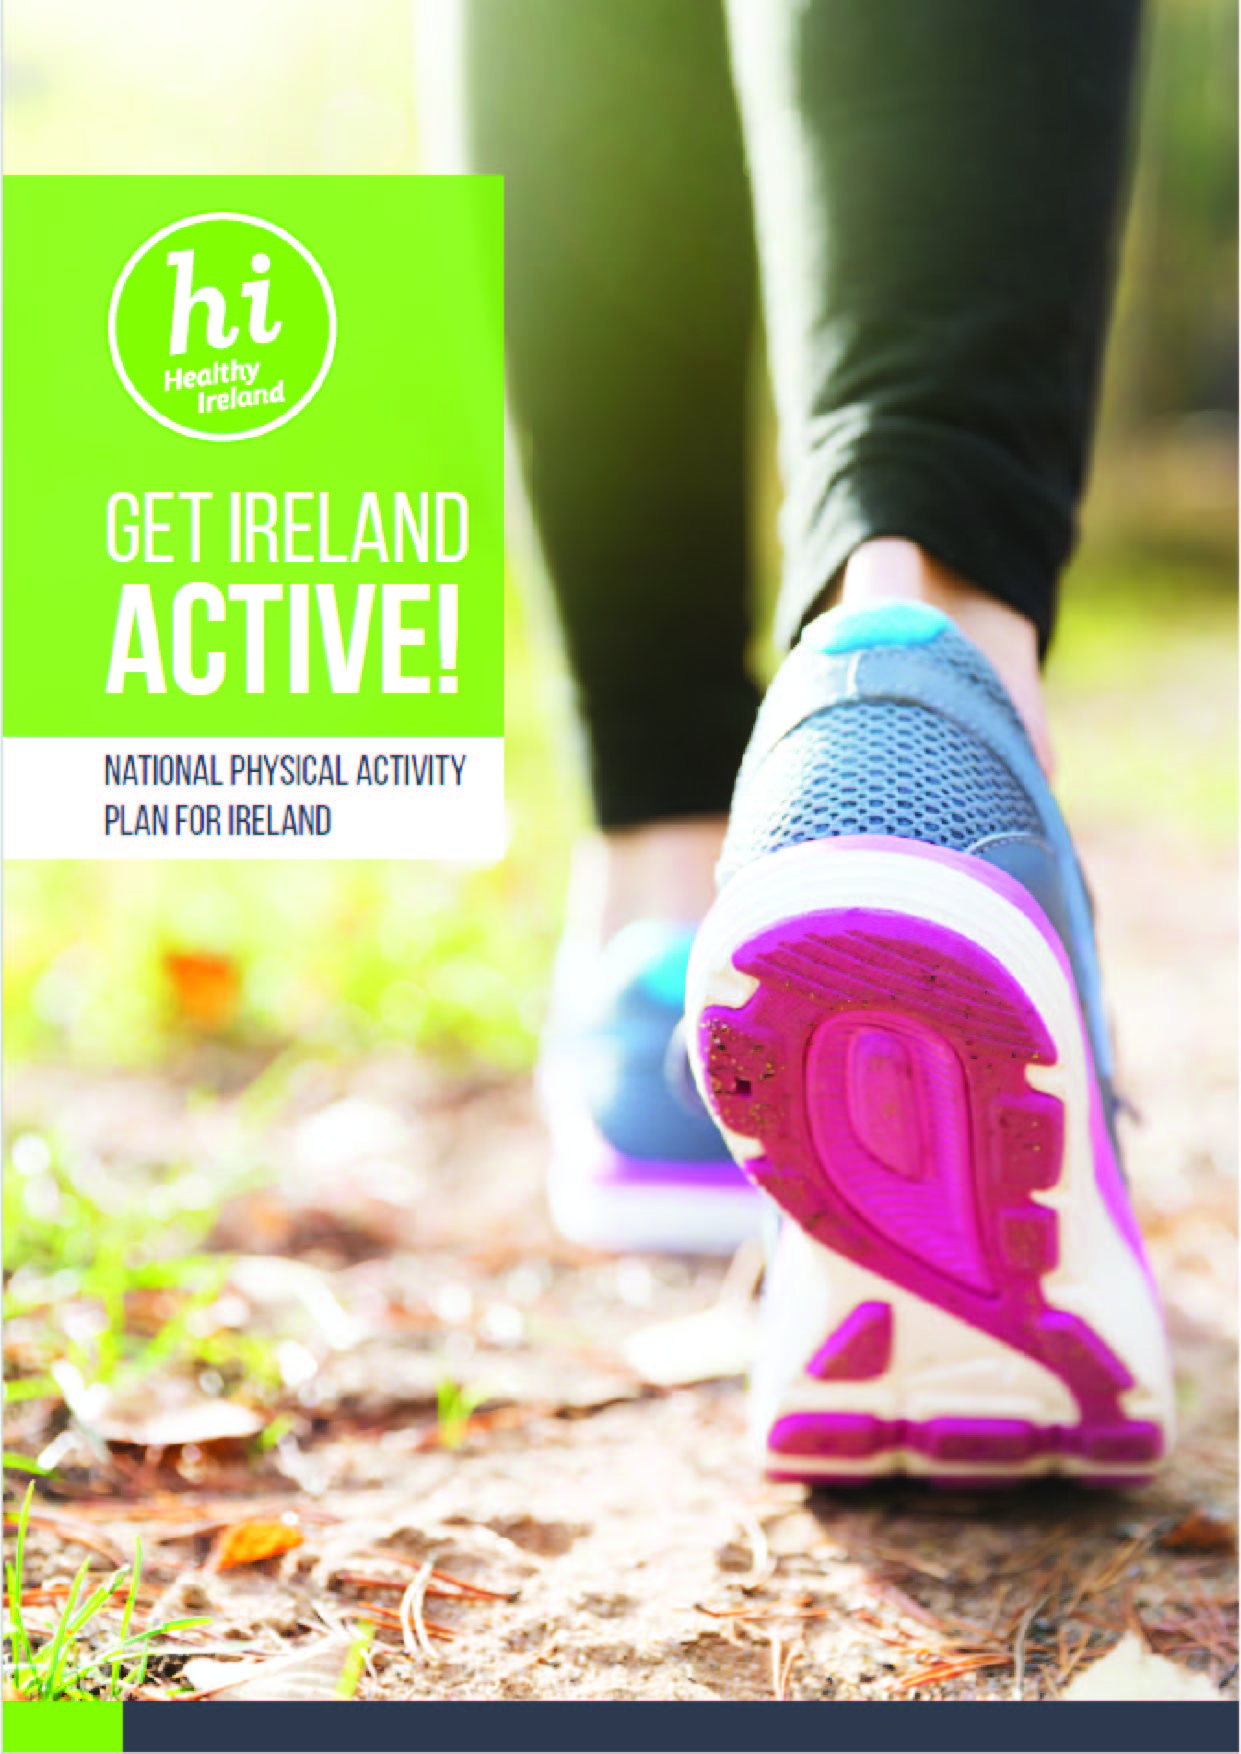 Get Ireland Active